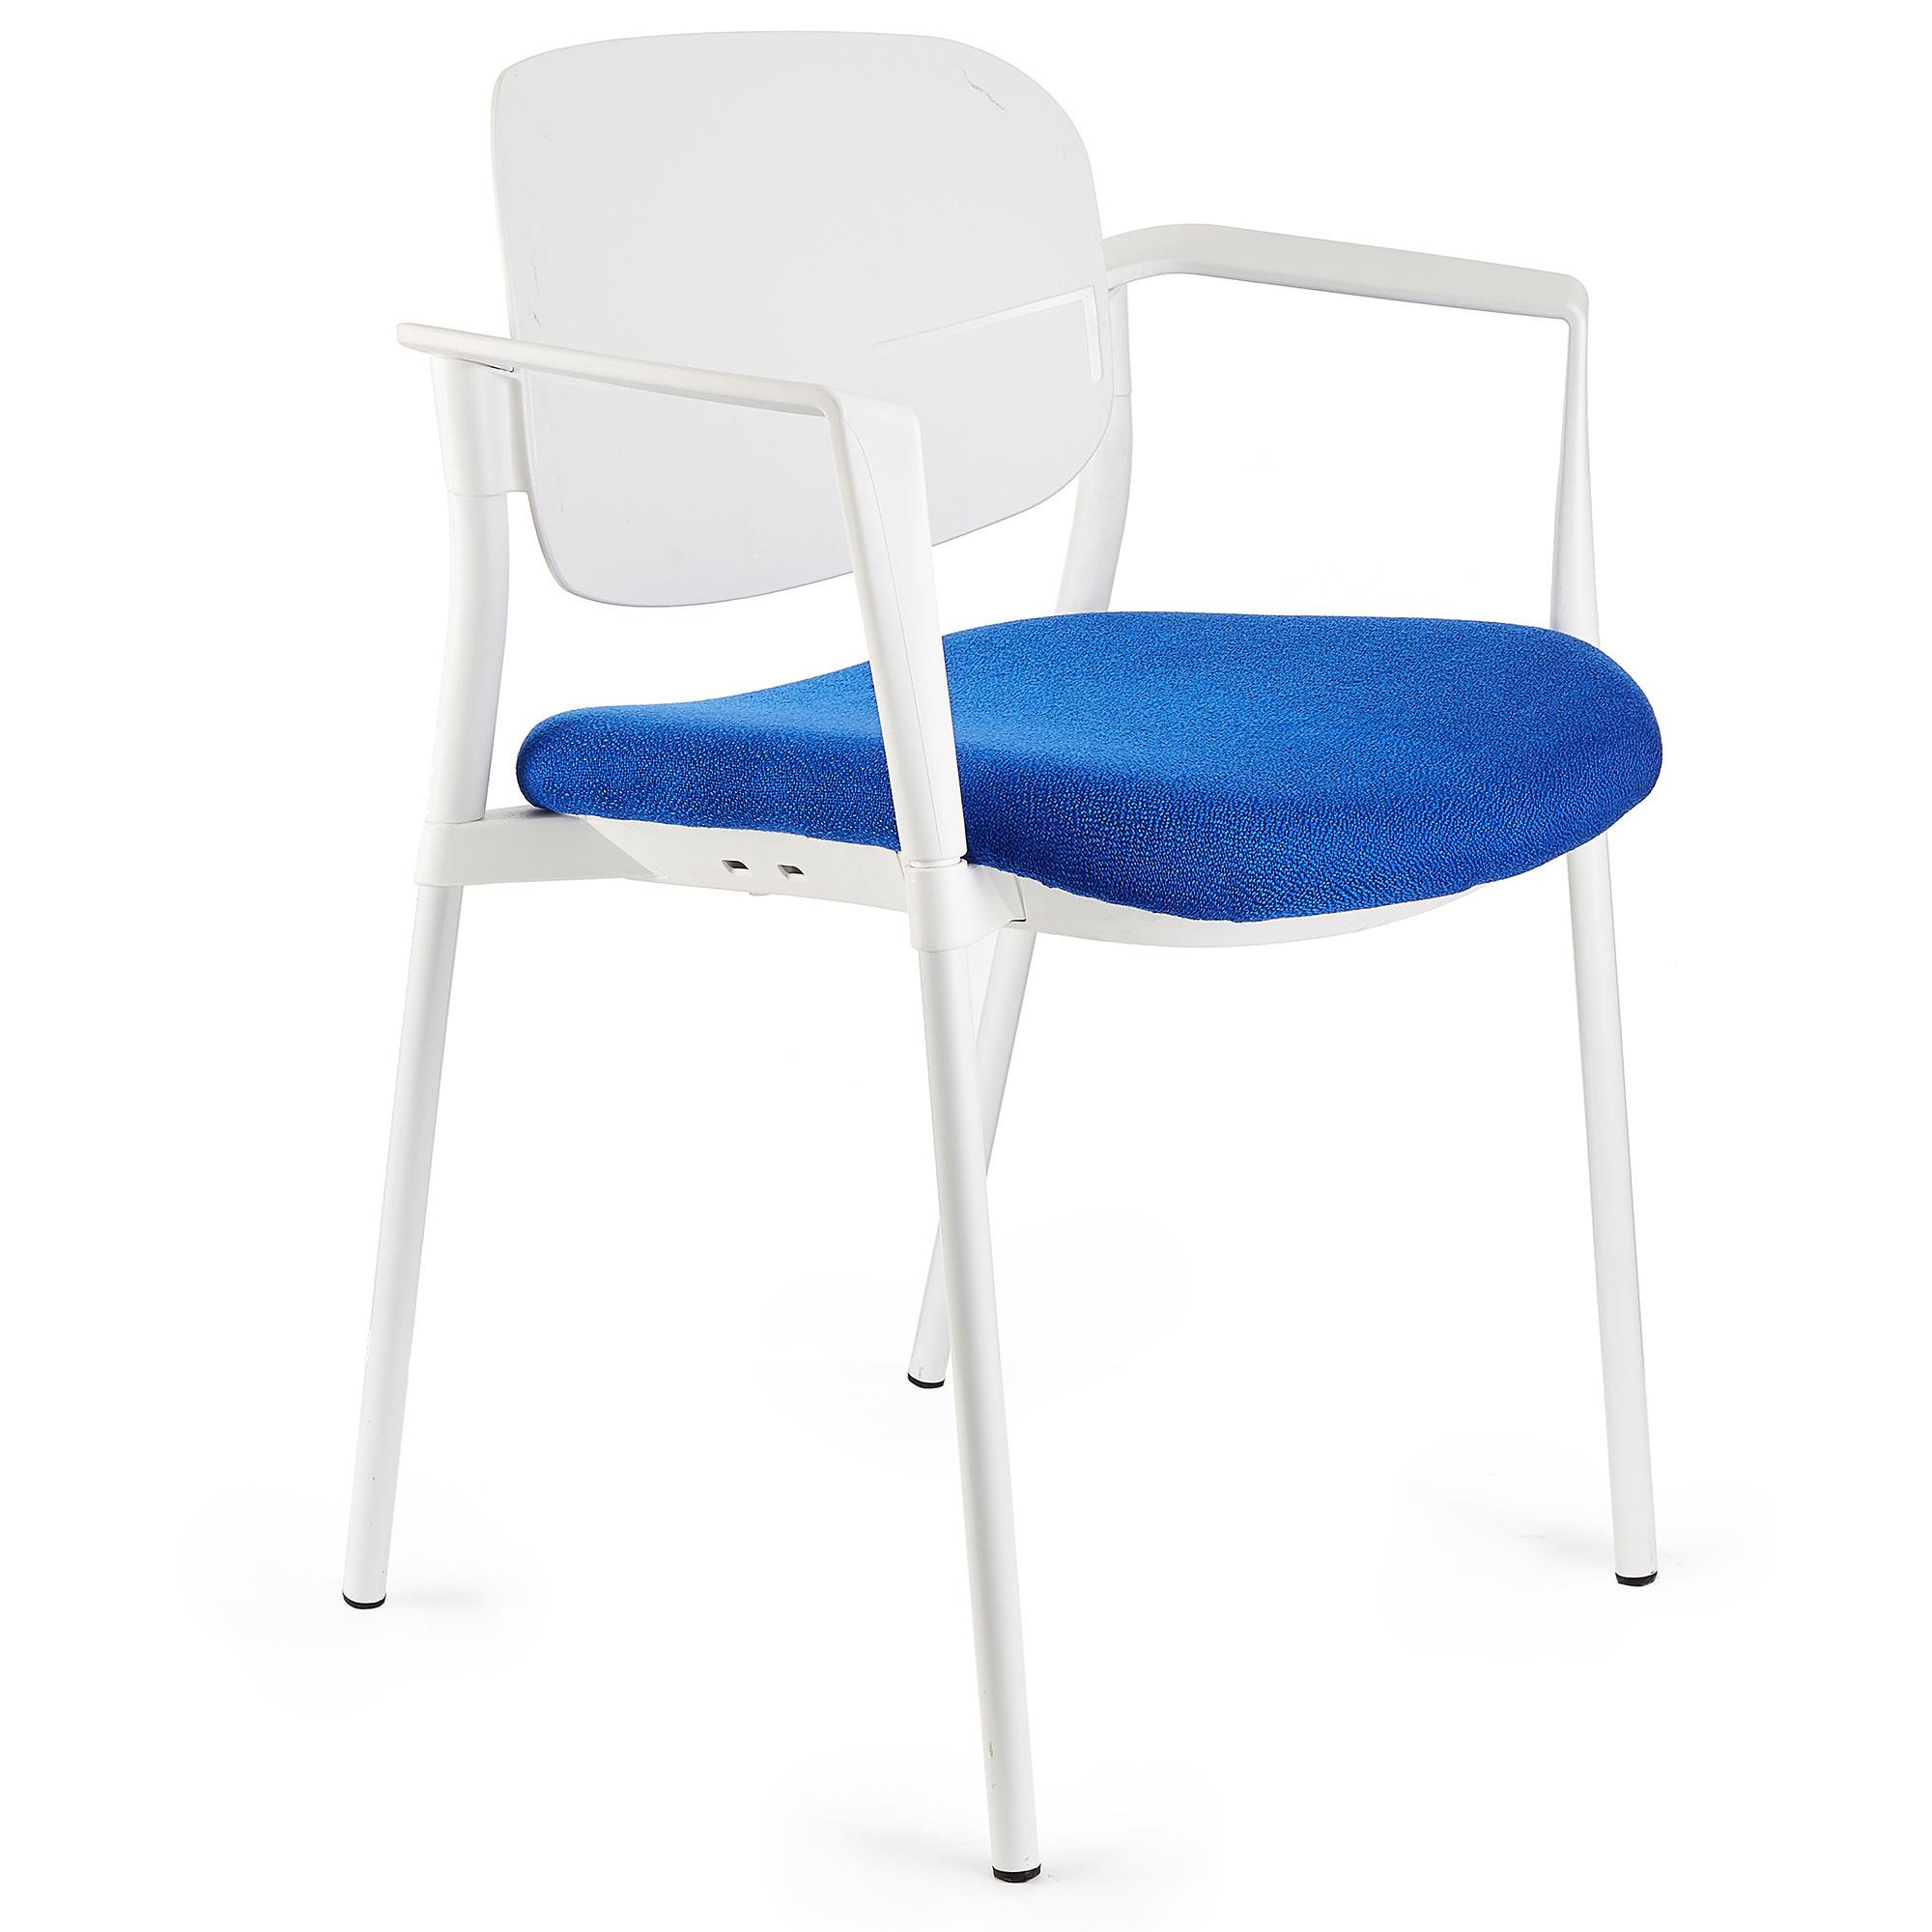 Konferenzstuhl ERIC, bequem und praktisch, stapelbar, Farbe Blau